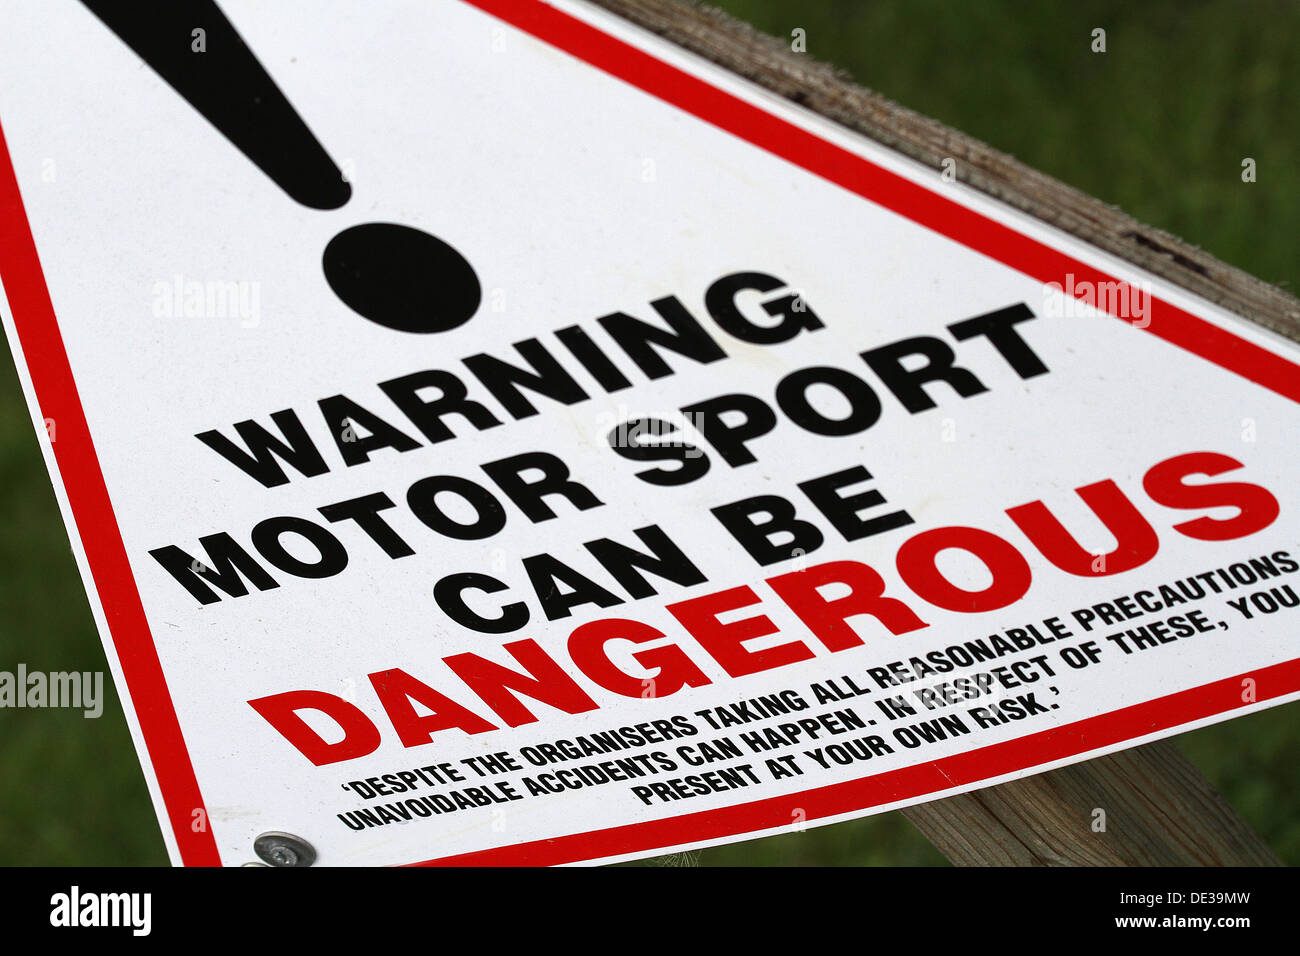 Warning sign for danger of motor sport. Stock Photo